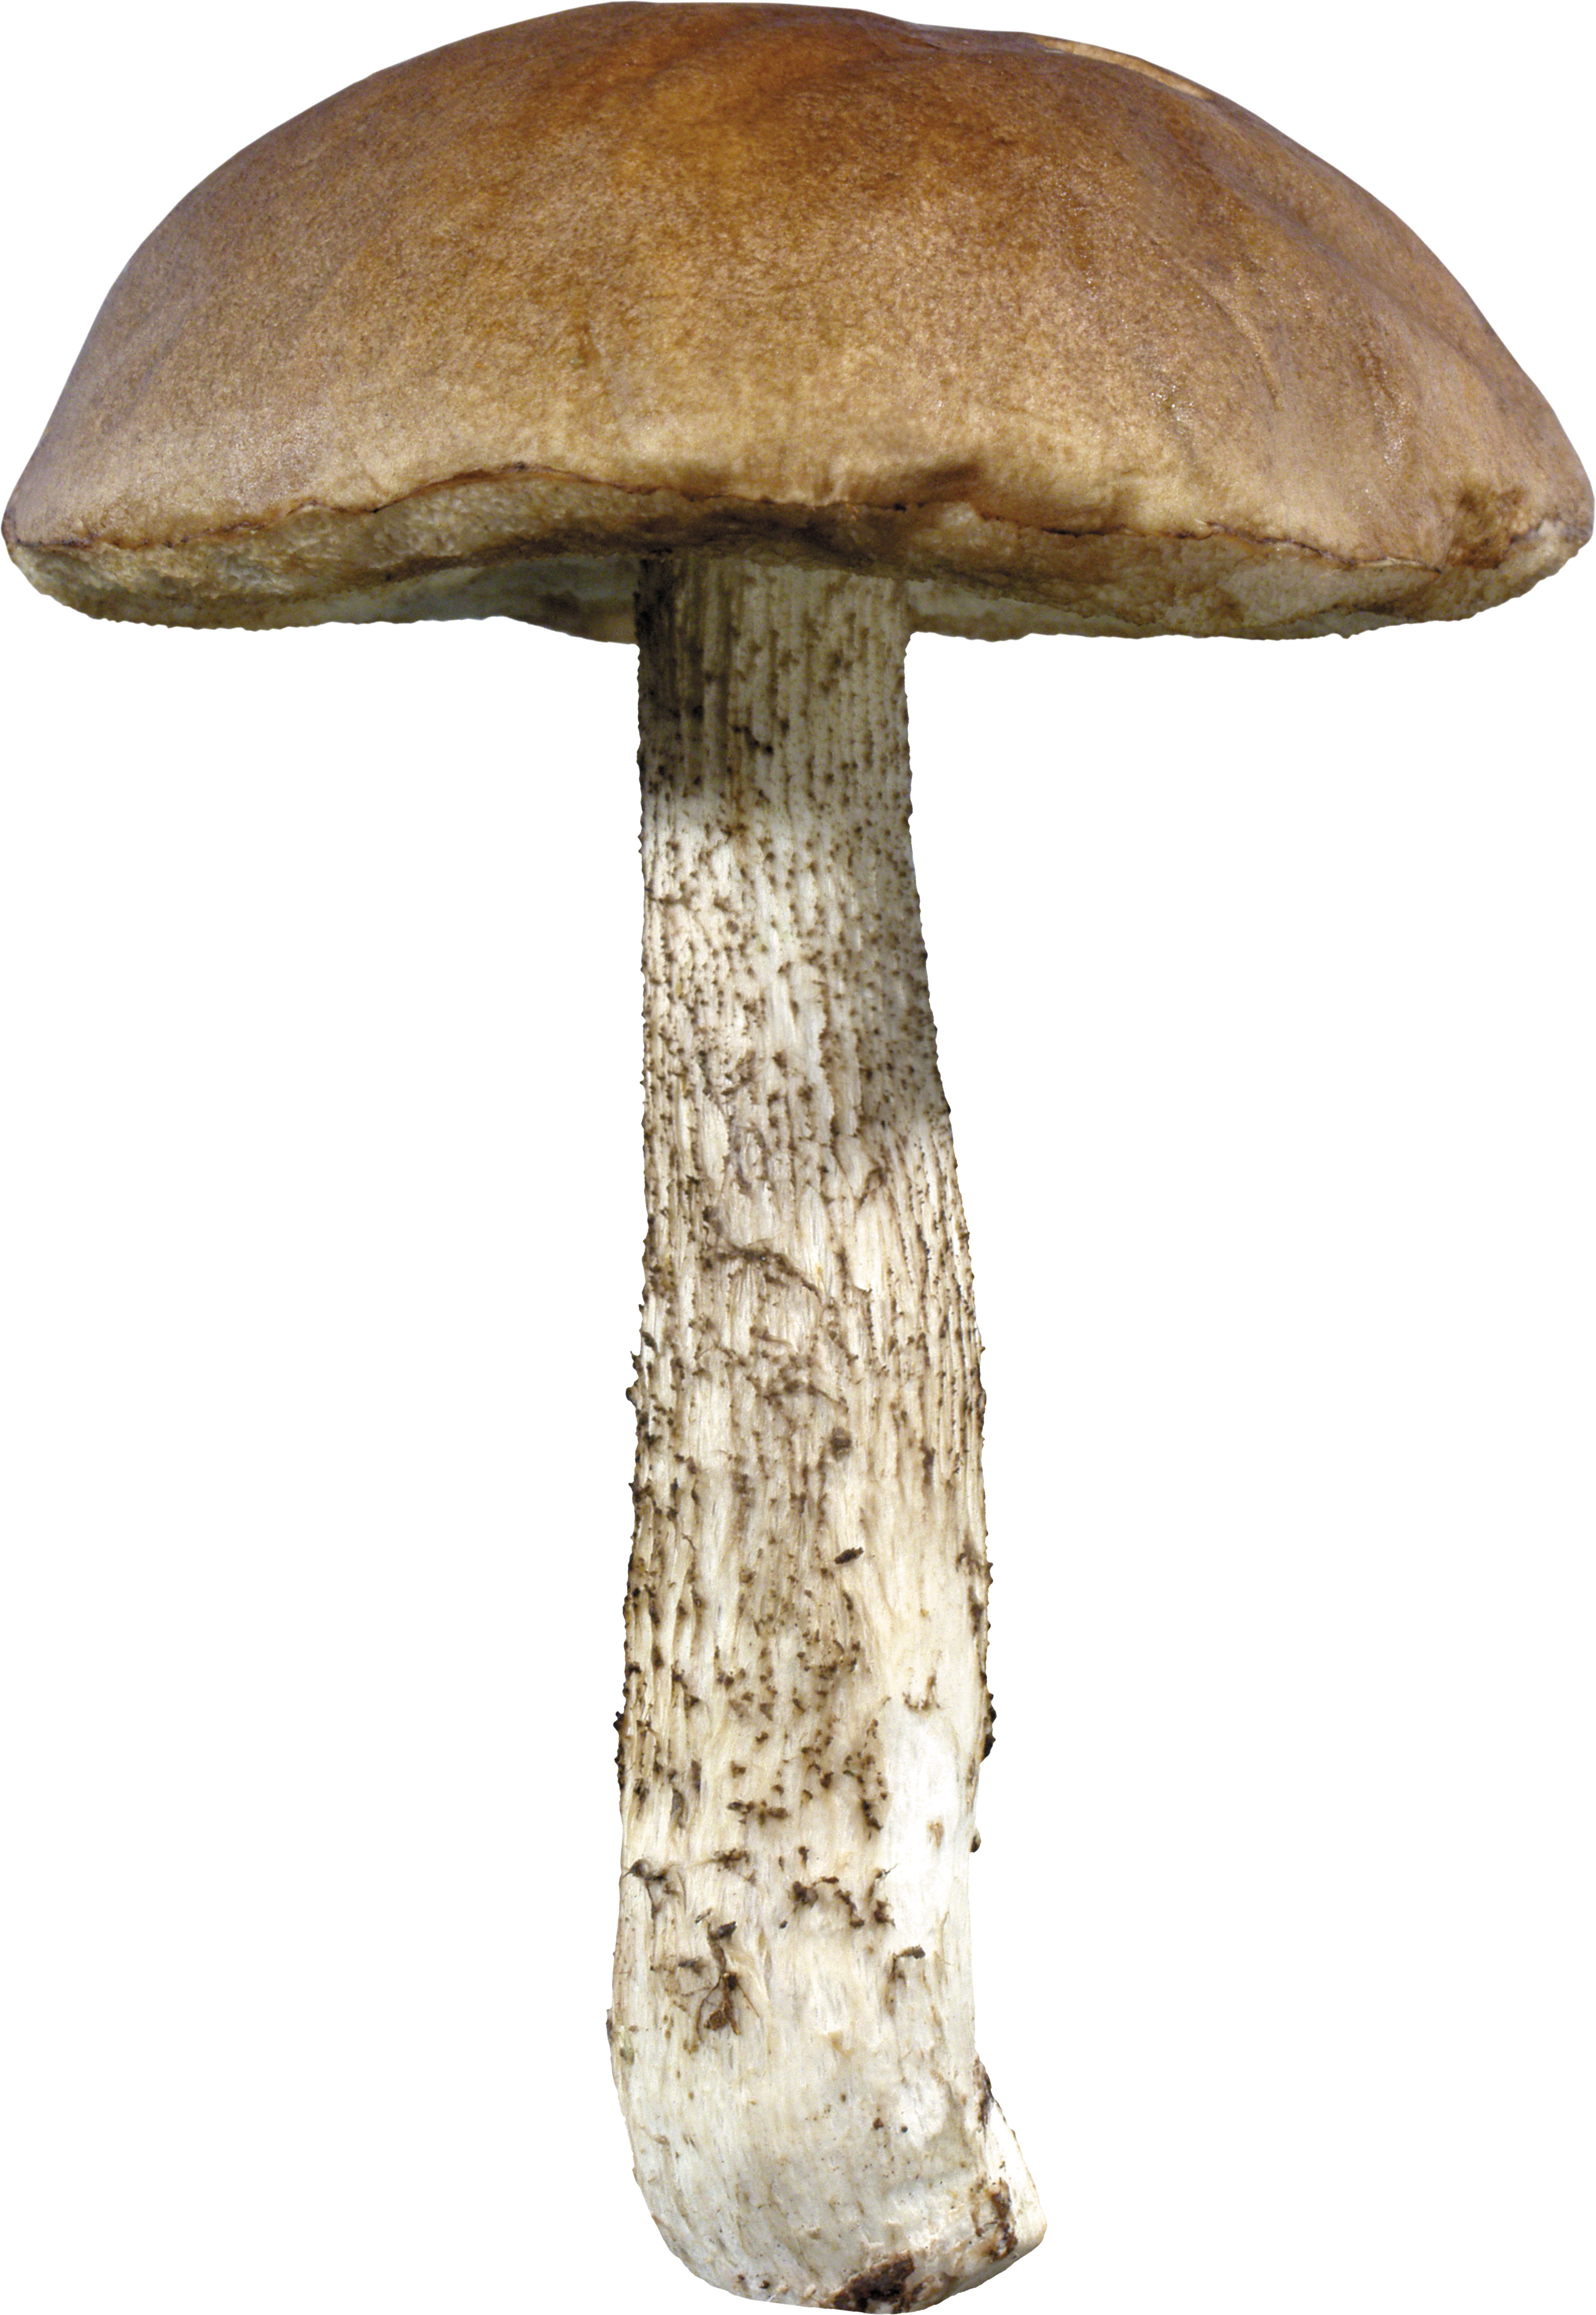 Mushrooms agaricus